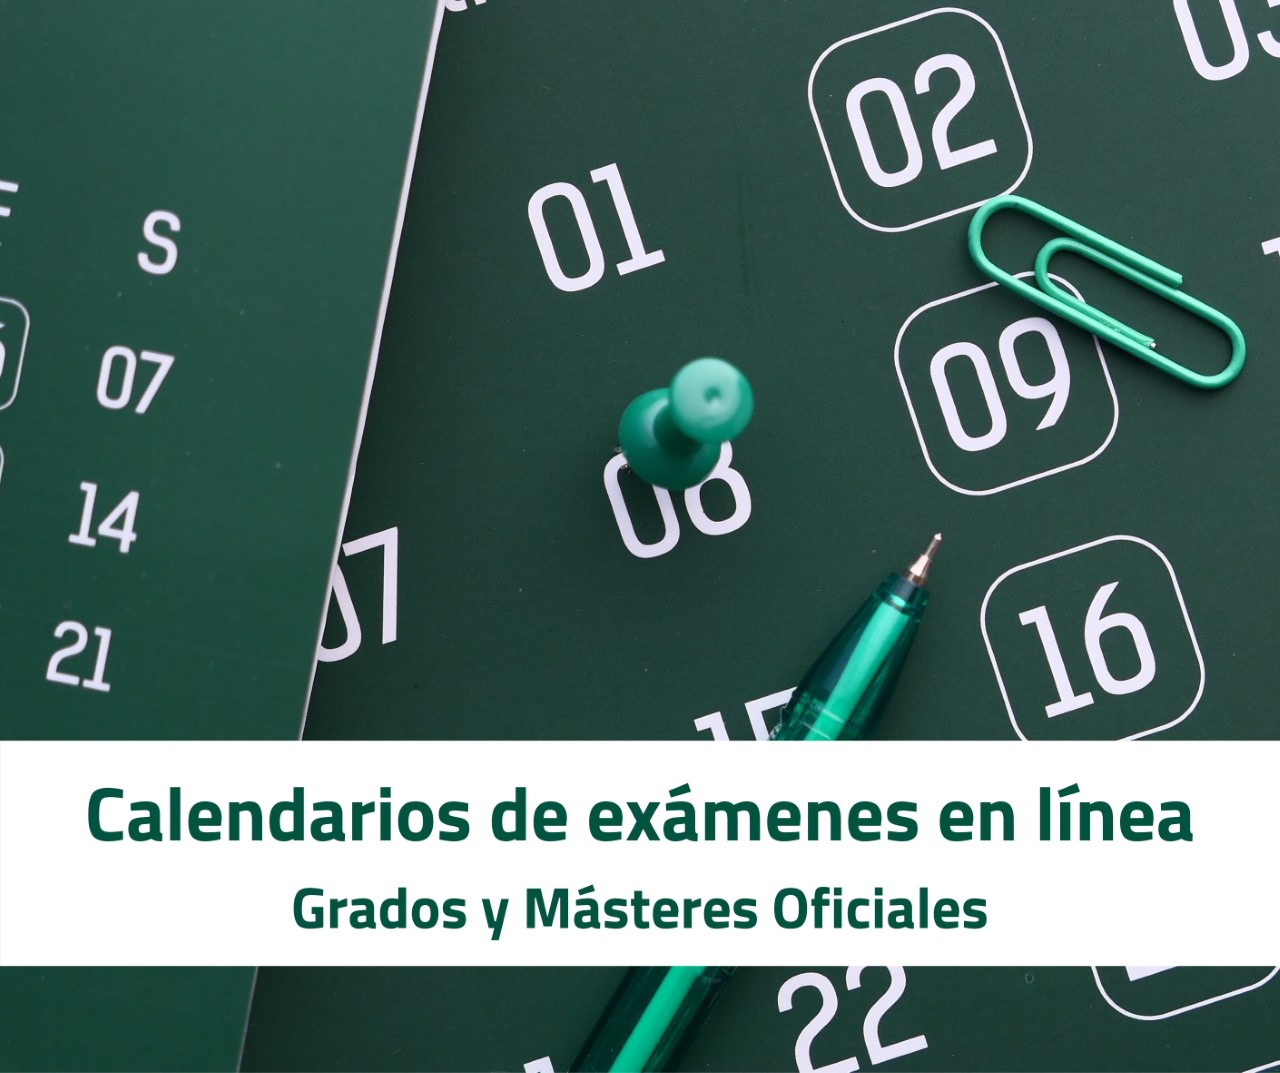 Calendario de exámenes finales en línea con los días y las horas de cada una de las asignaturas 